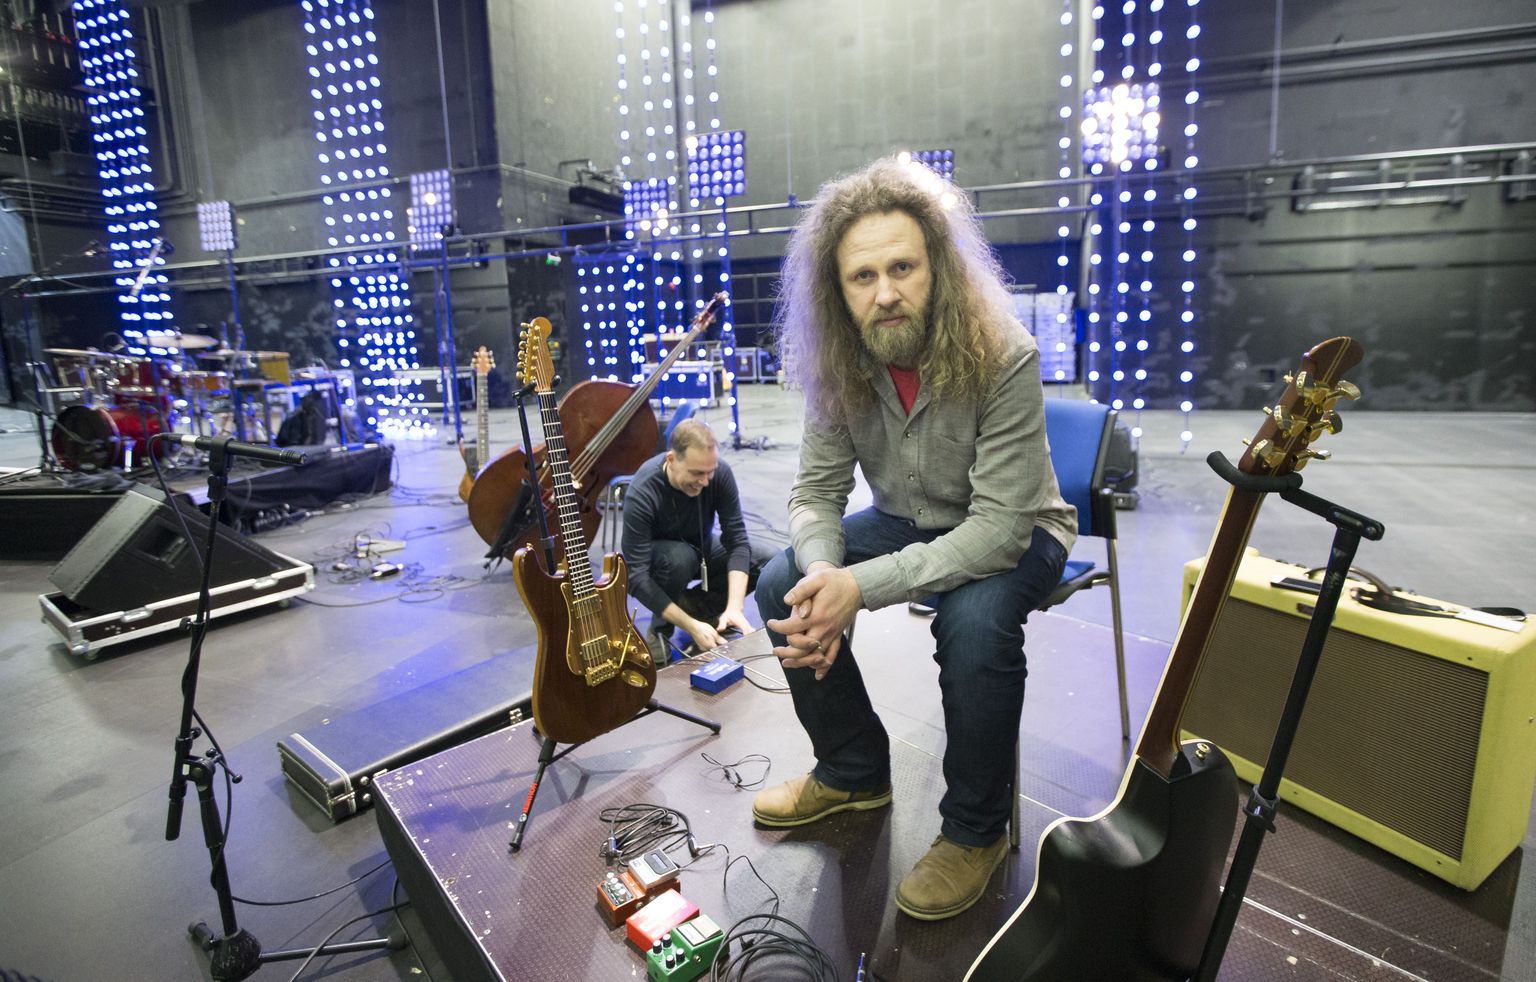 Oleg Pissarenko Nordea kontsertmajas, kus 17. märtsil toimub kontsert "Päriselt"